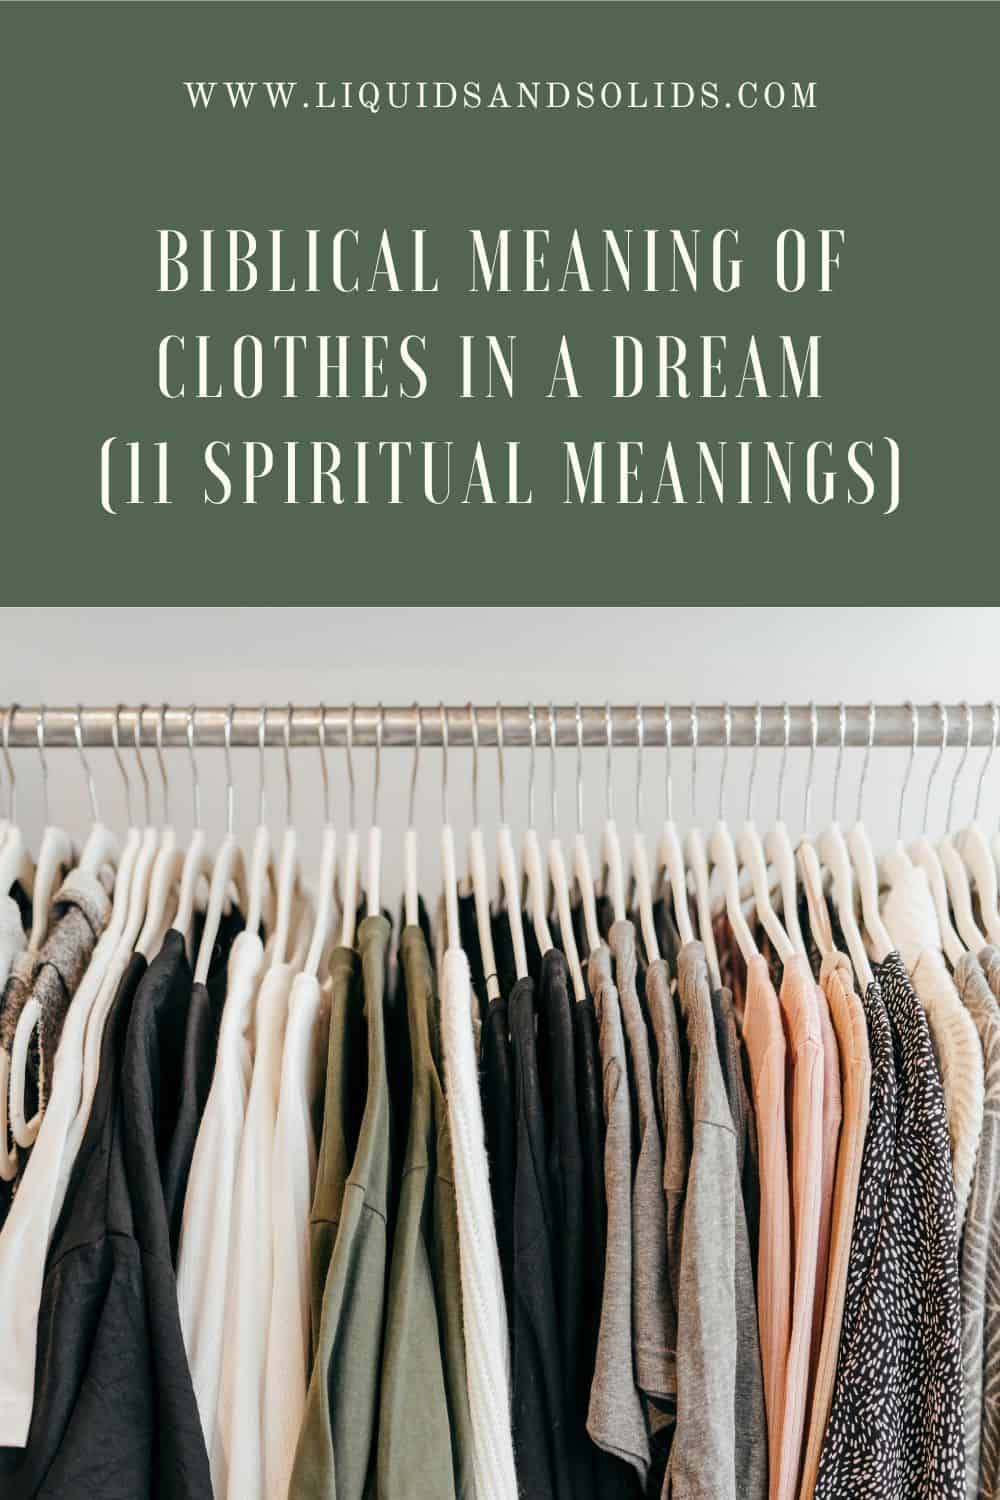  المعنى الكتابي للملابس في الحلم (11 معاني روحية)